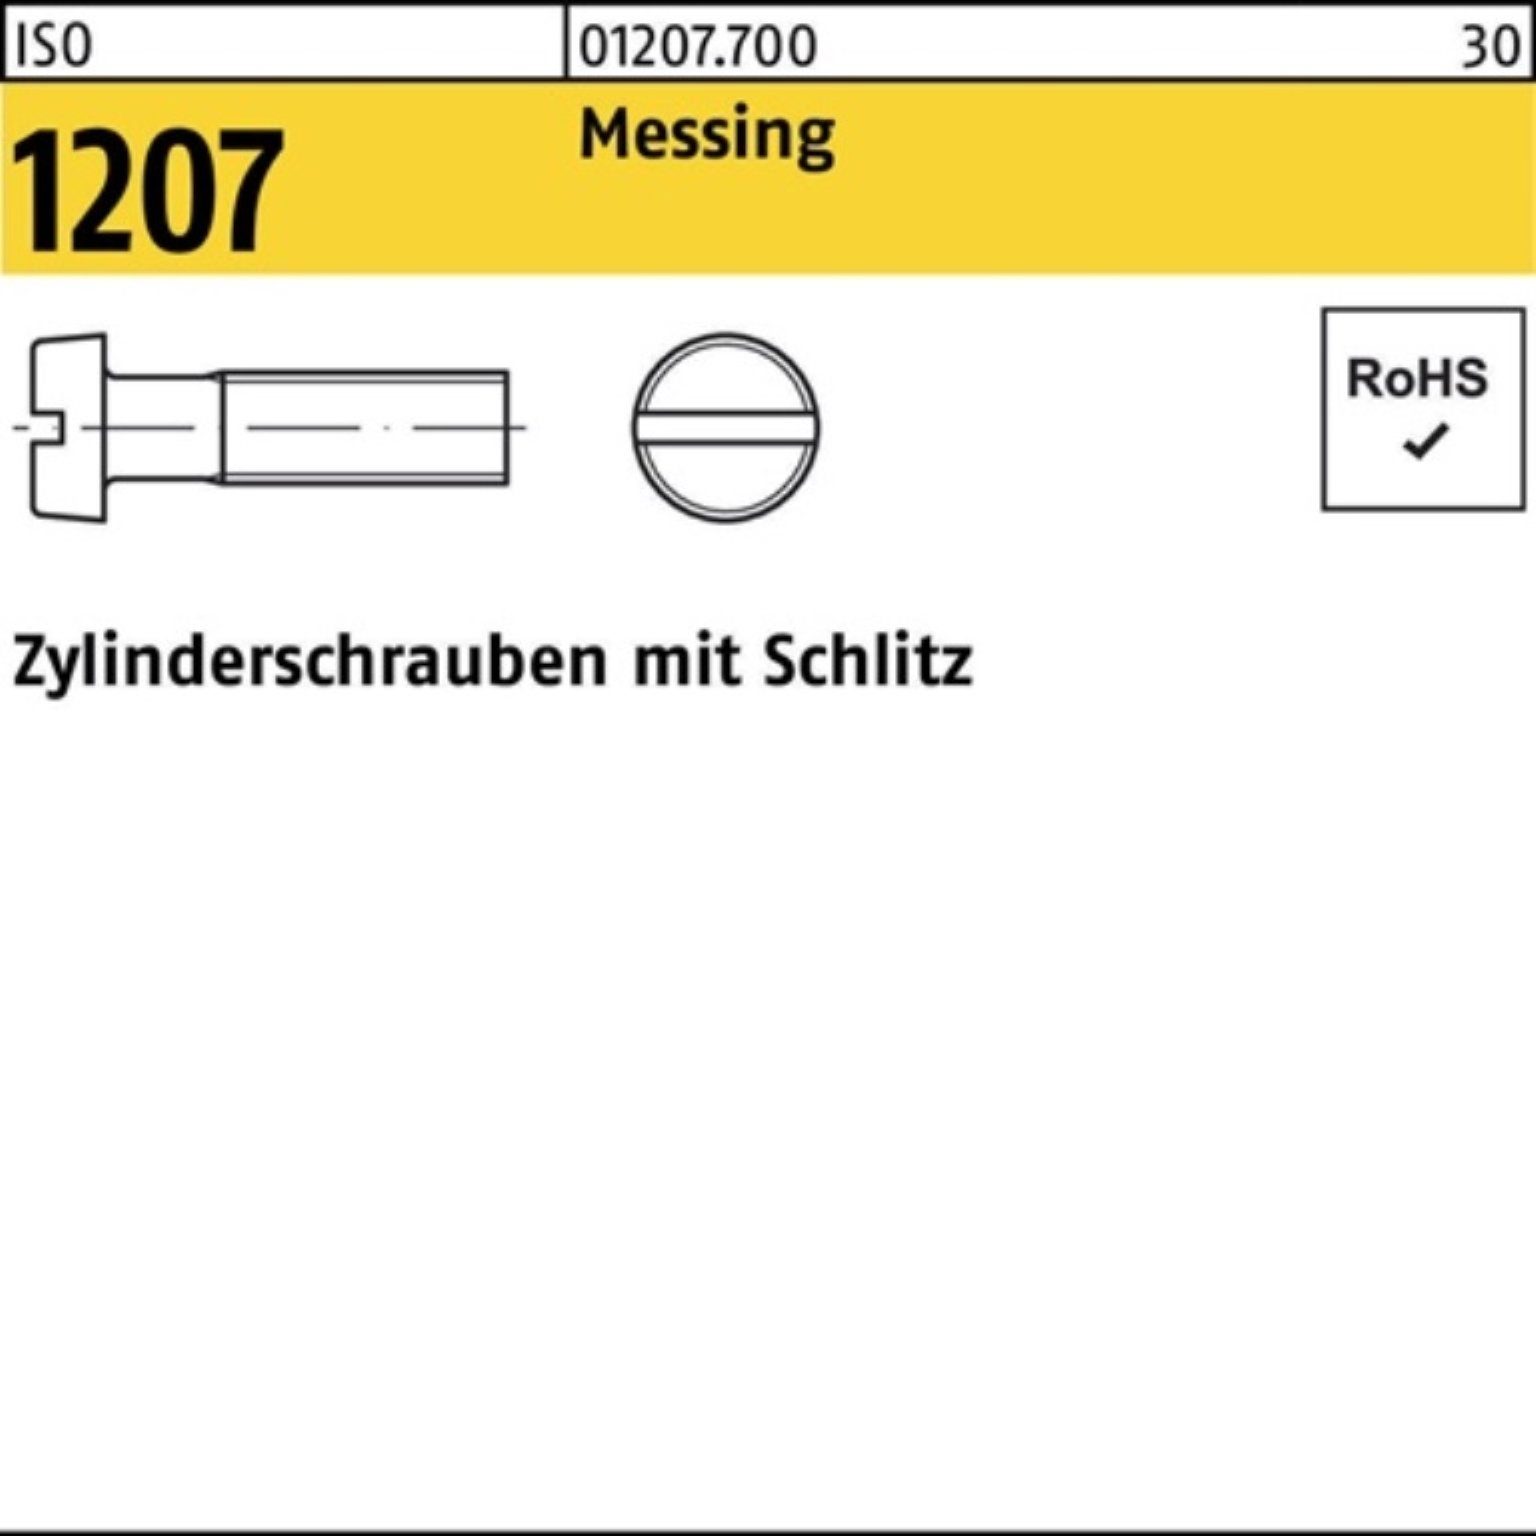 16 Reyher Schlitz Zylinderschraube 1000er Zylinderschraube 1000 Messing ISO Stü Pack M6x 1207